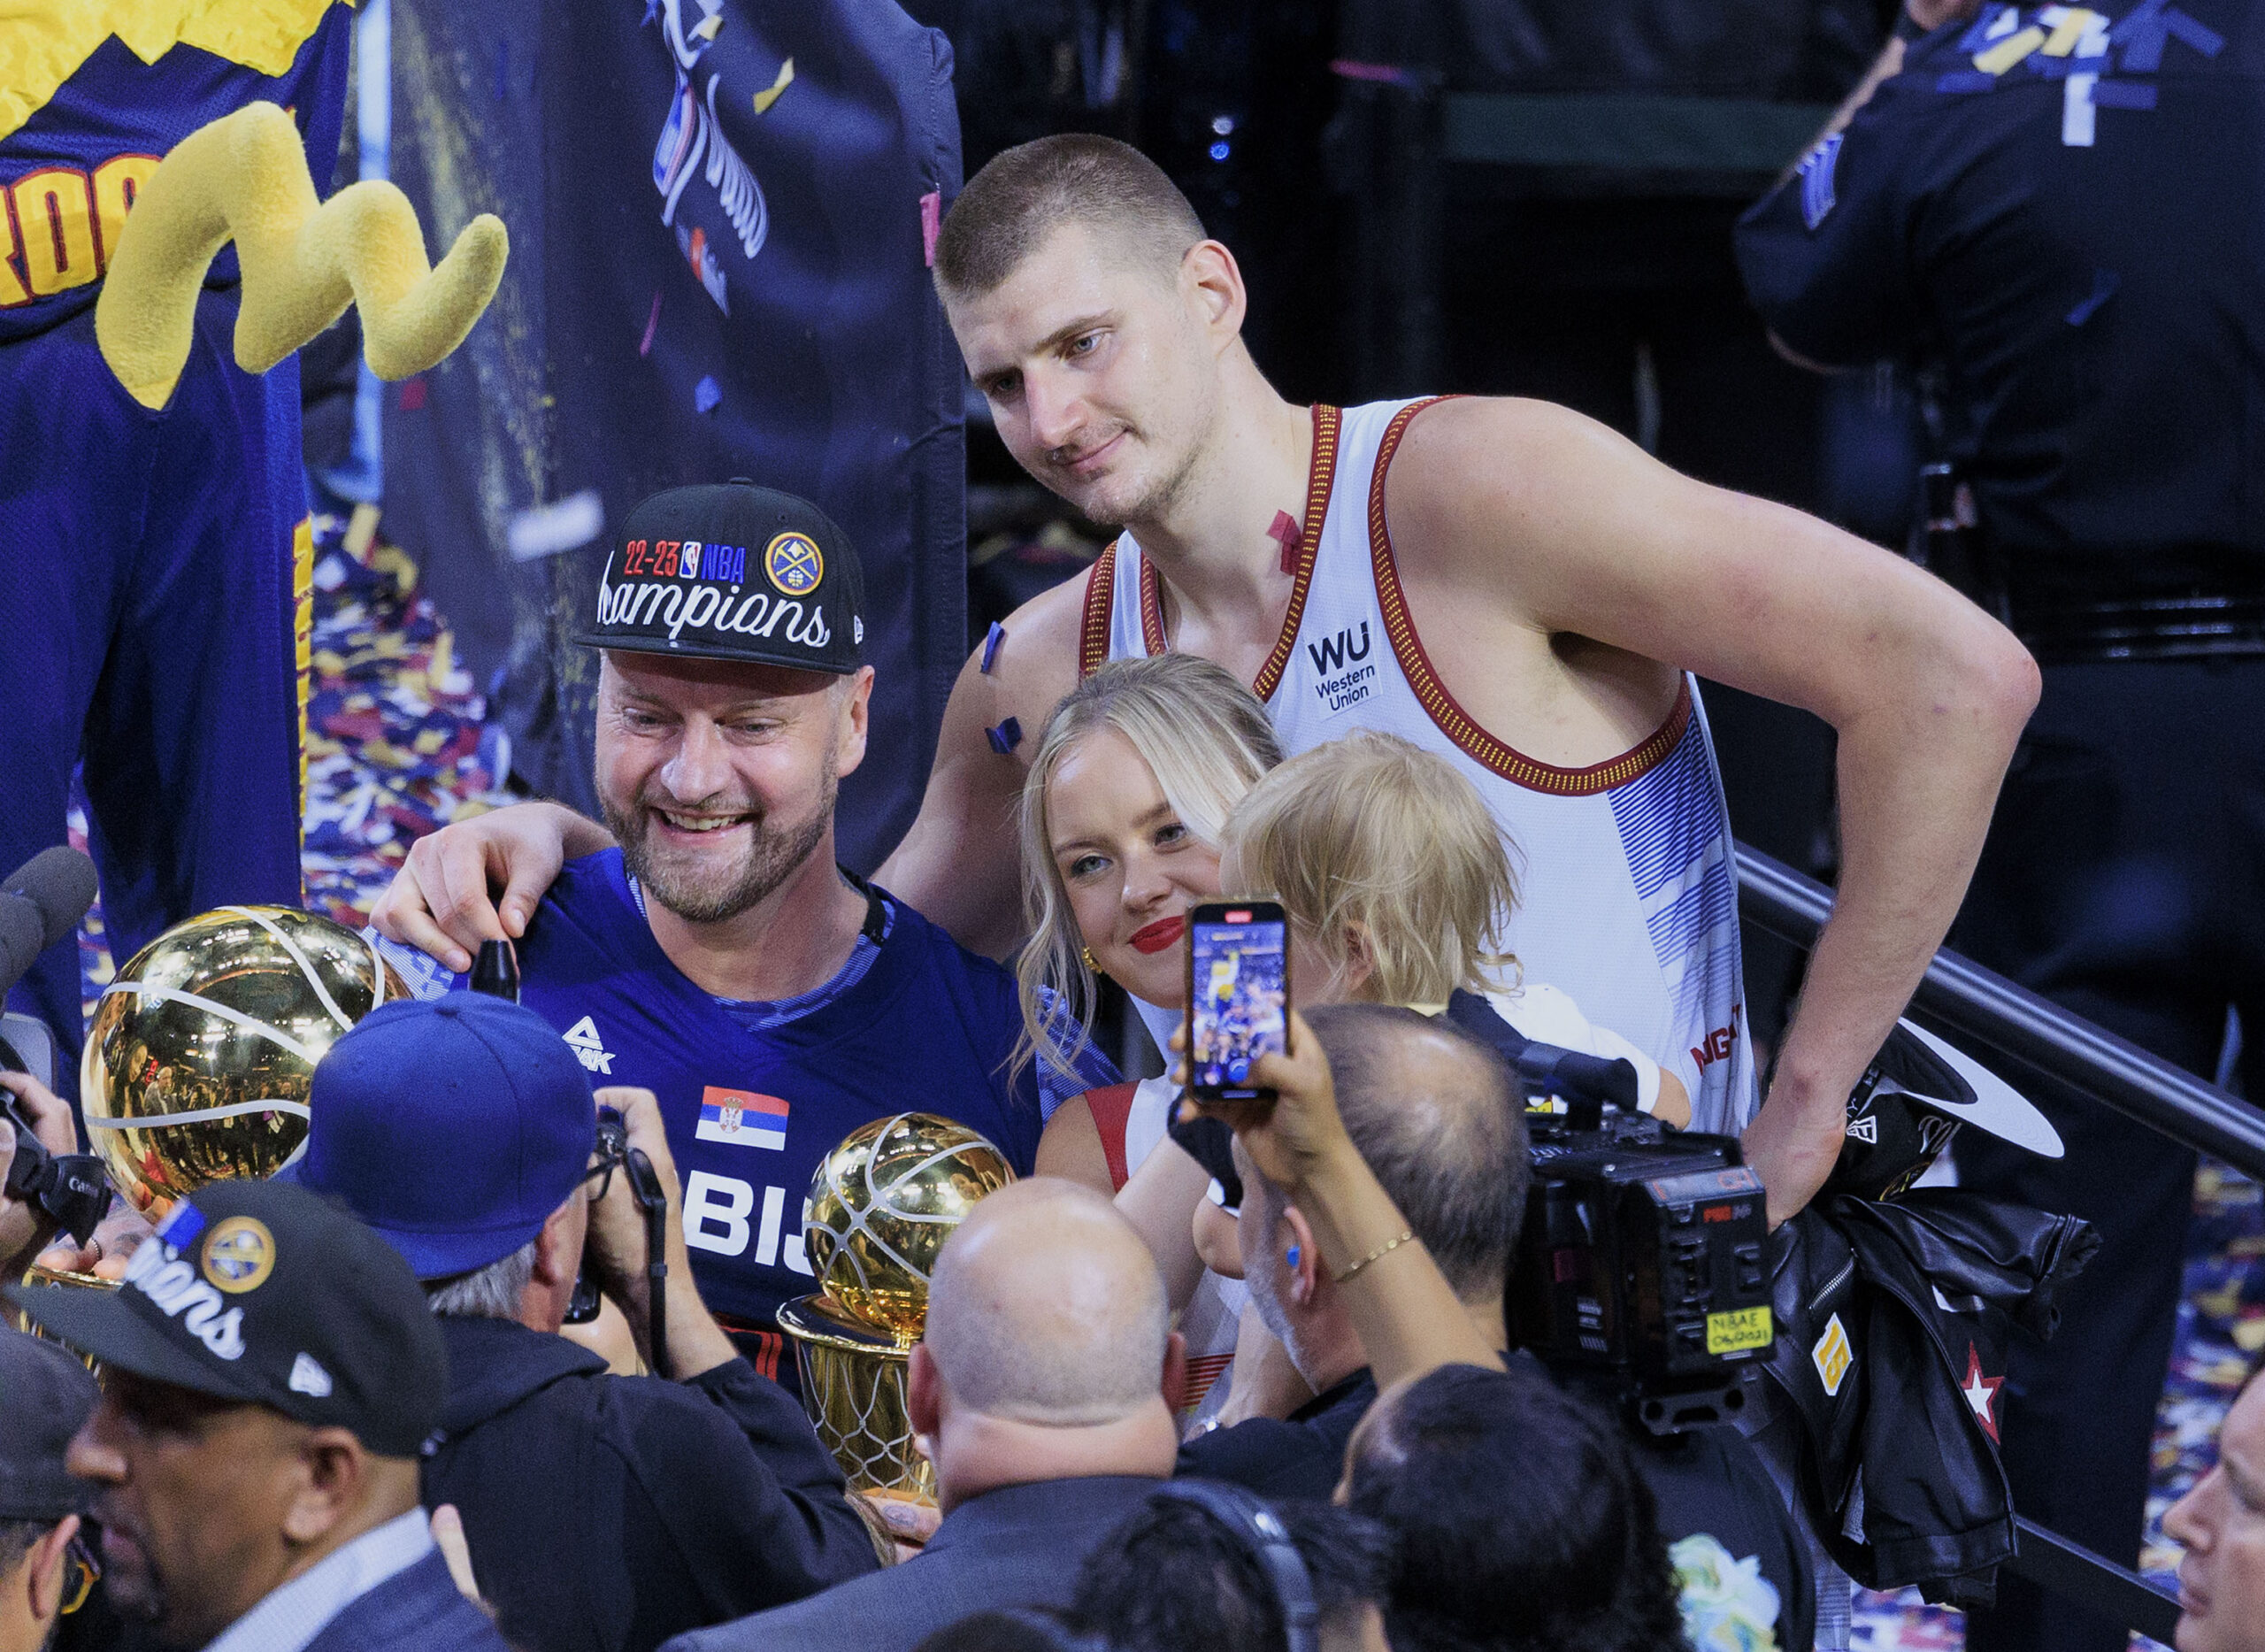 Perfekcyjne mistrzostwo Nuggets. W Denver powstaje nowa dynastia NBA?